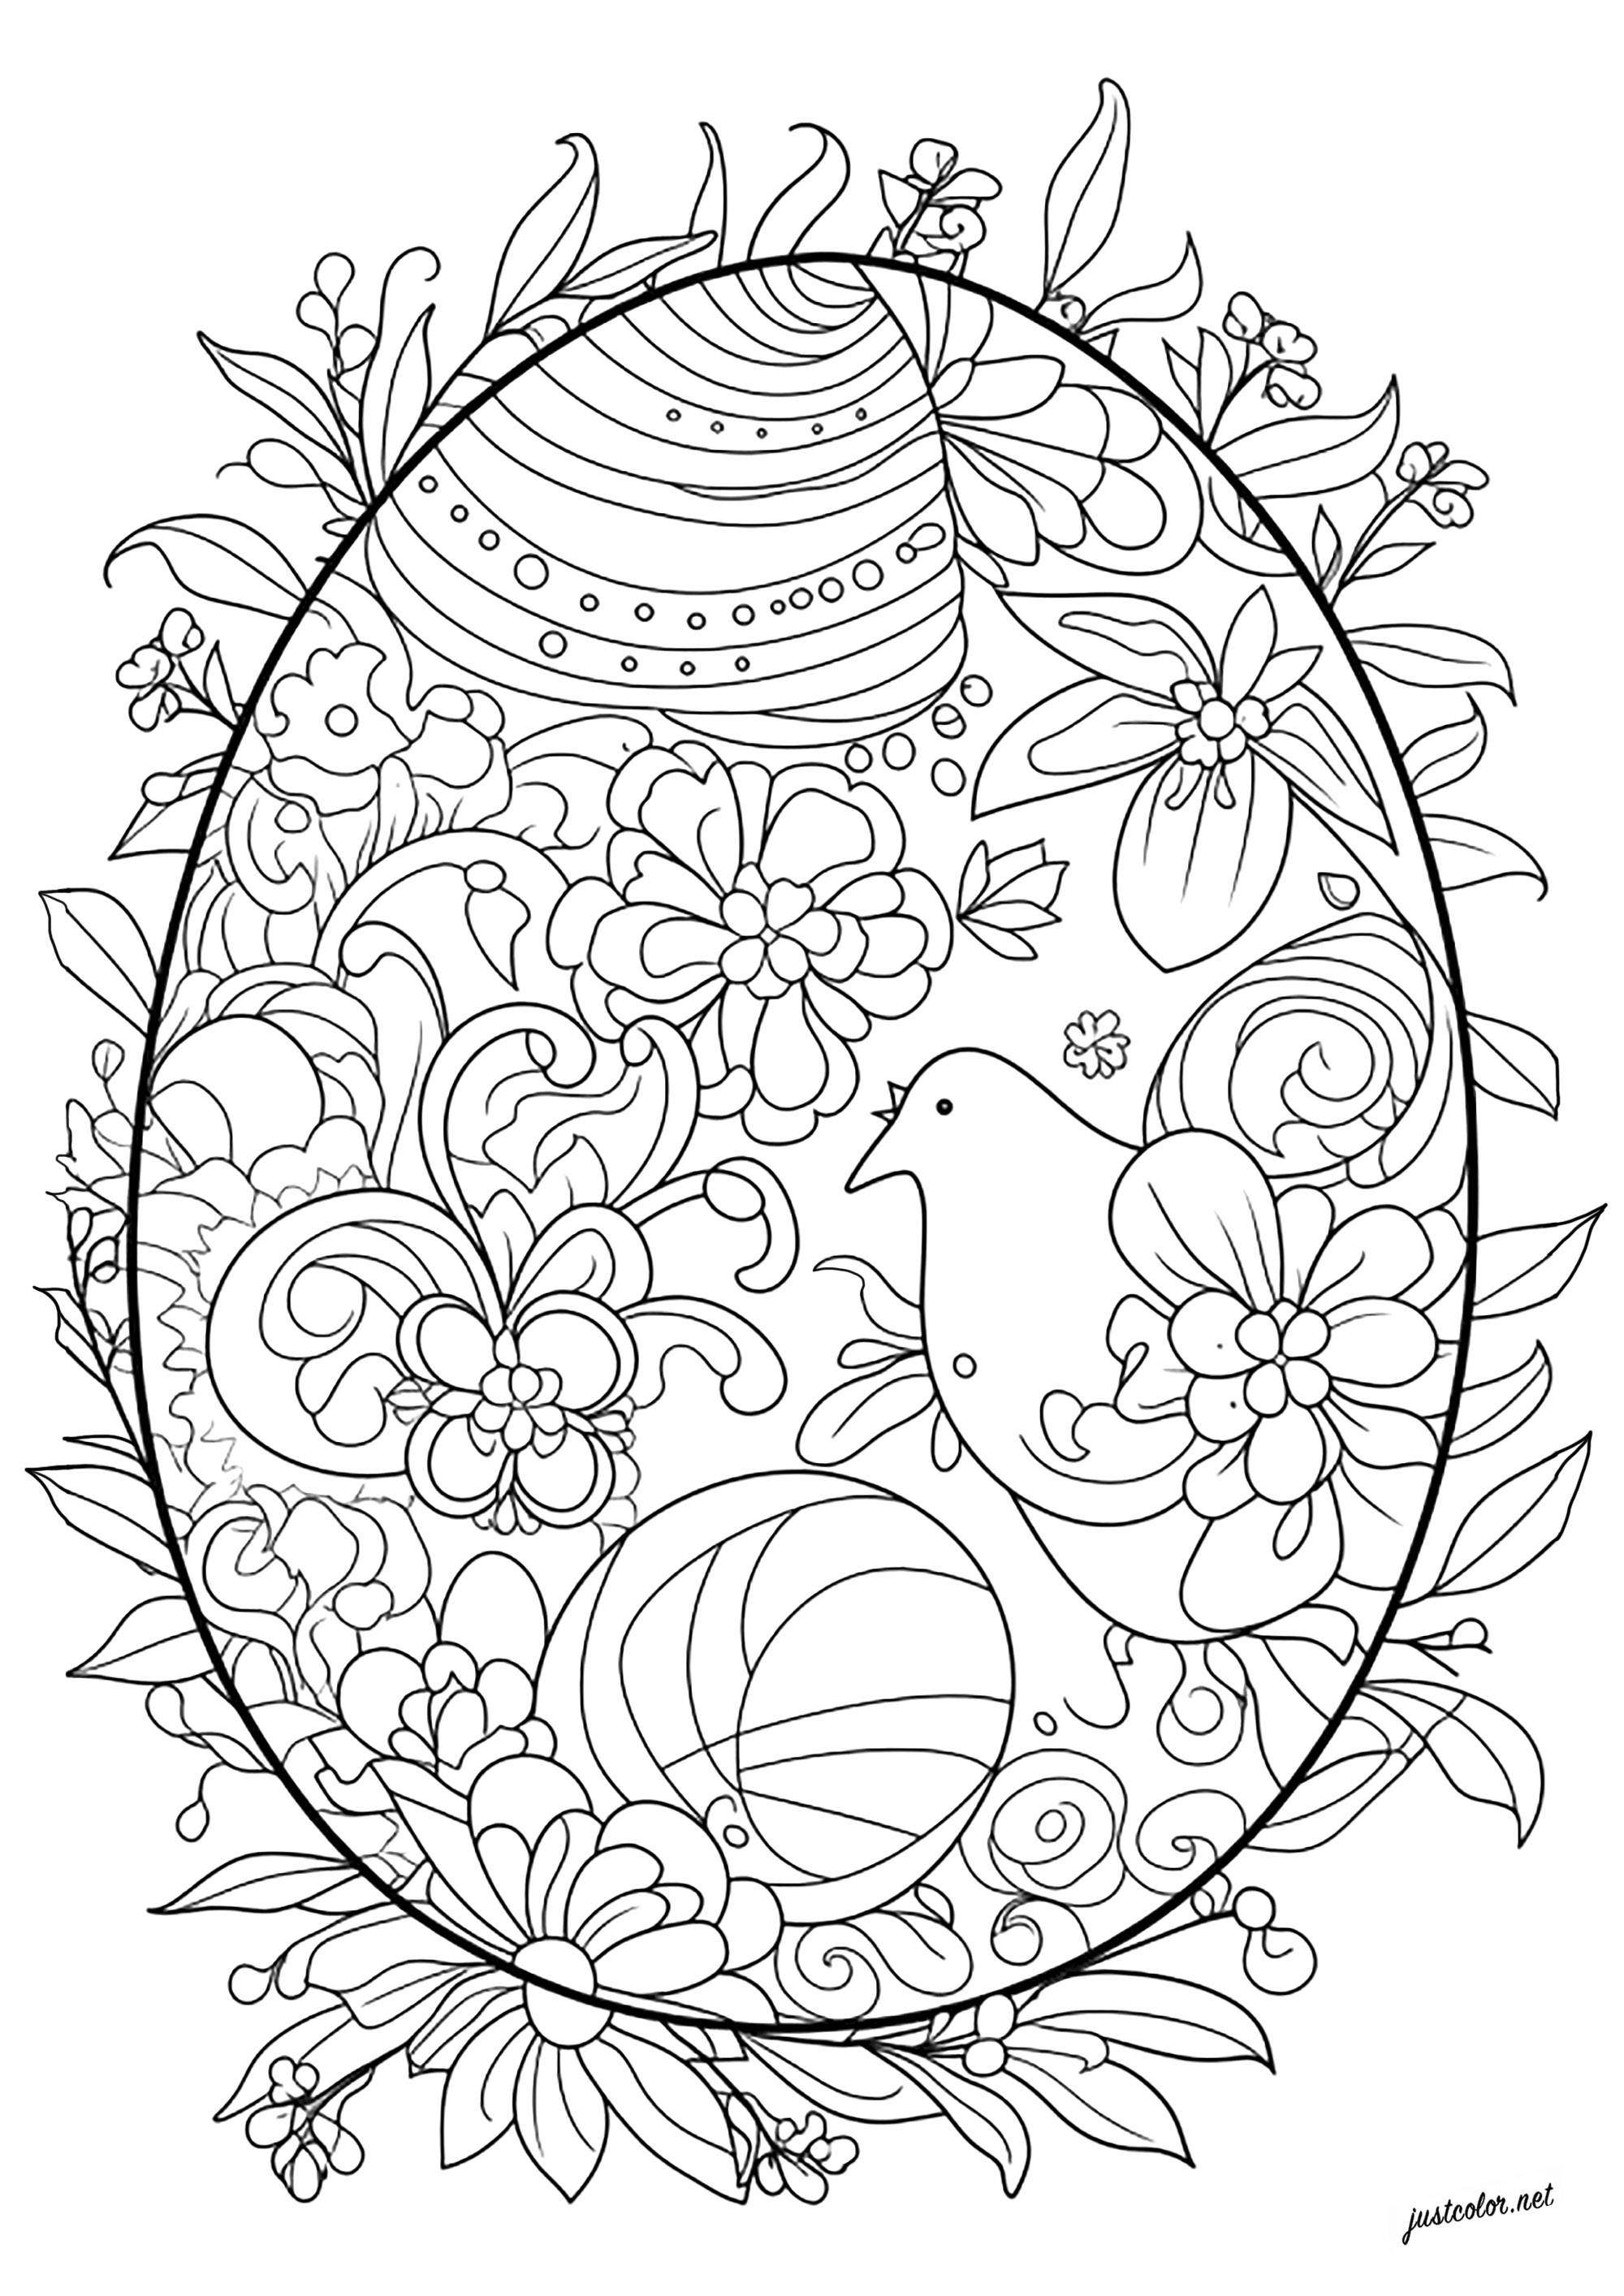 Colorazione complessa di un uovo di Pasqua. Molti disegni astratti, fiori e persino una gallina da colorare in questo bellissimo uovo di Pasqua.